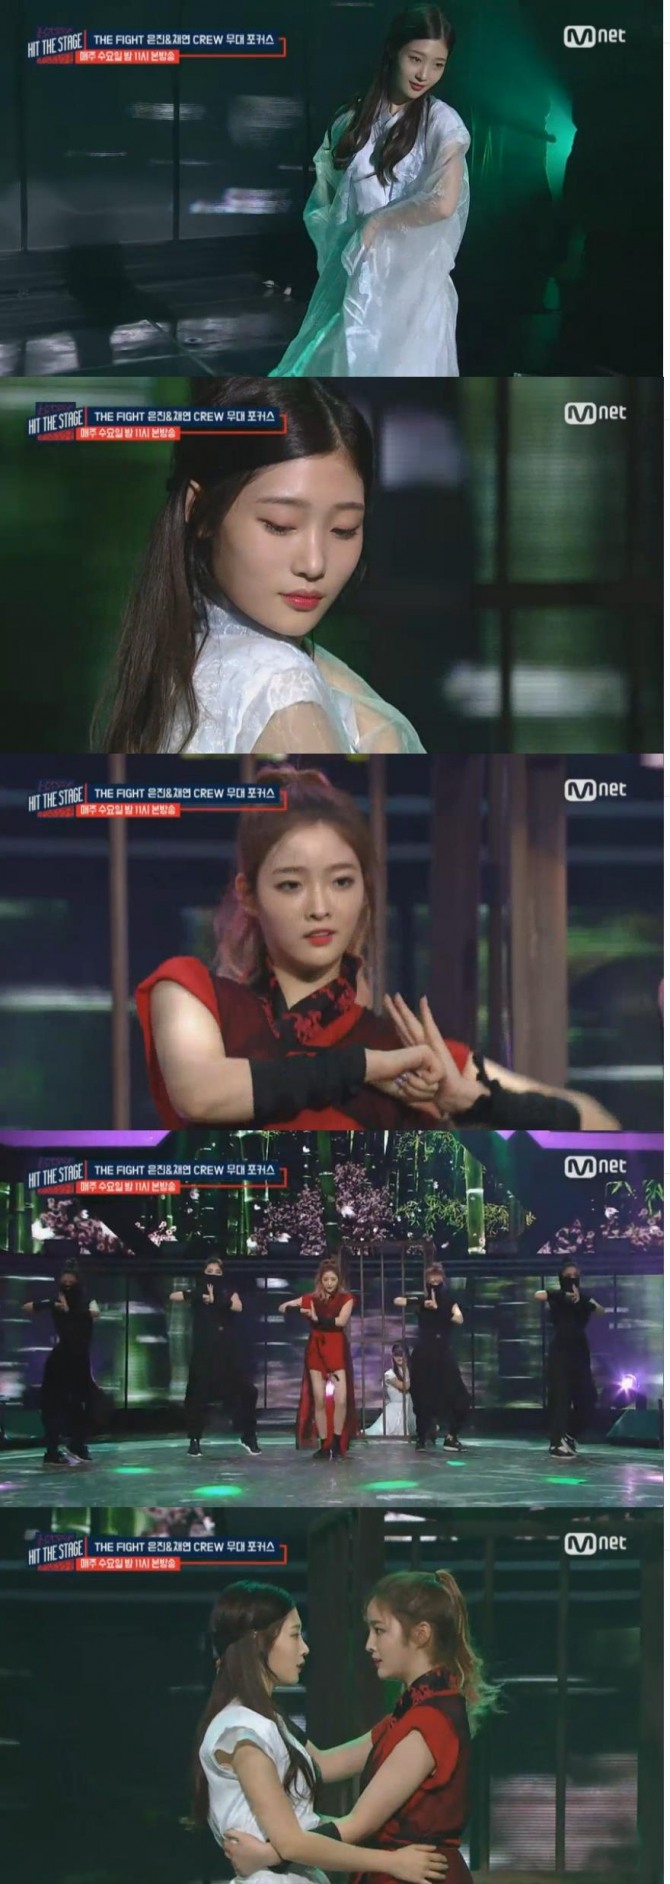 21일 방송된 Mnet '힛 더 스테이지' 9회에서 다이아의 정채연은 '아가씨를 구하라'는 콘셉트로 은진X울트라 크루와 청순하면서도 강렬한 무대를 꾸몄다./사진=Mnet 방송 캡처